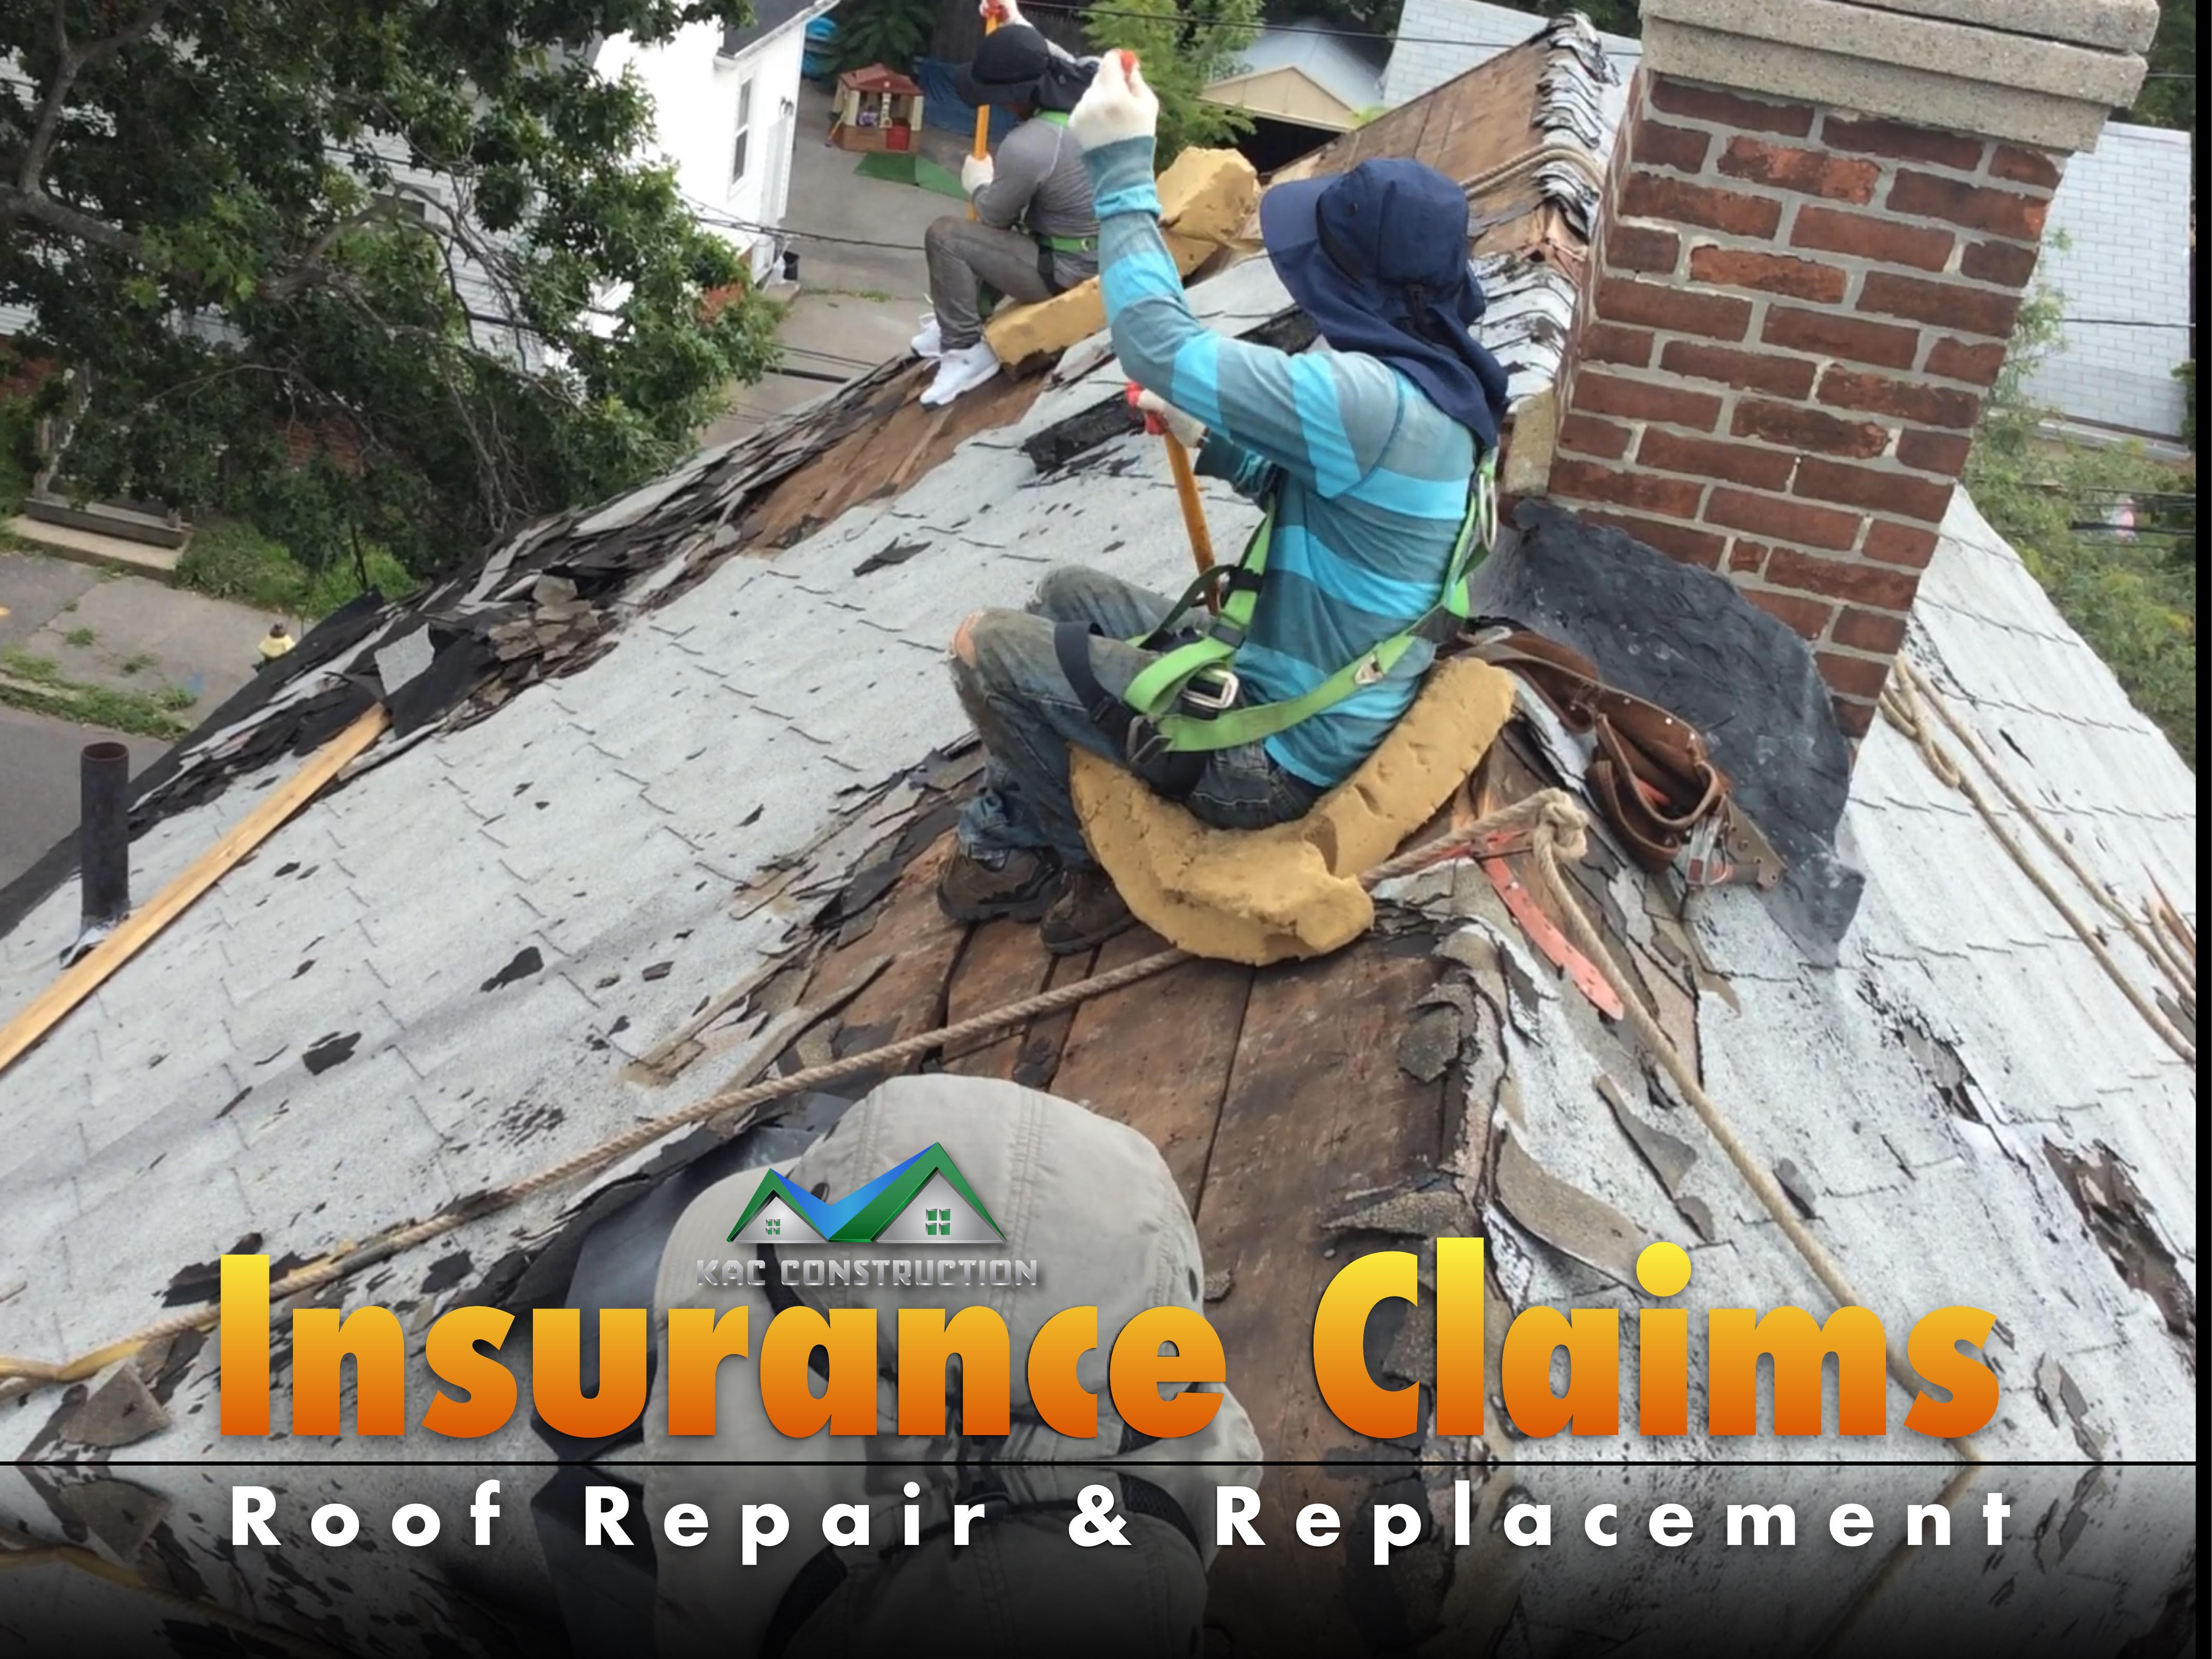 Roof repair, roof repair ri, roof repair in ri, roof repair insurance claim, insurance claim roof repair, insurance claim roof repair ri